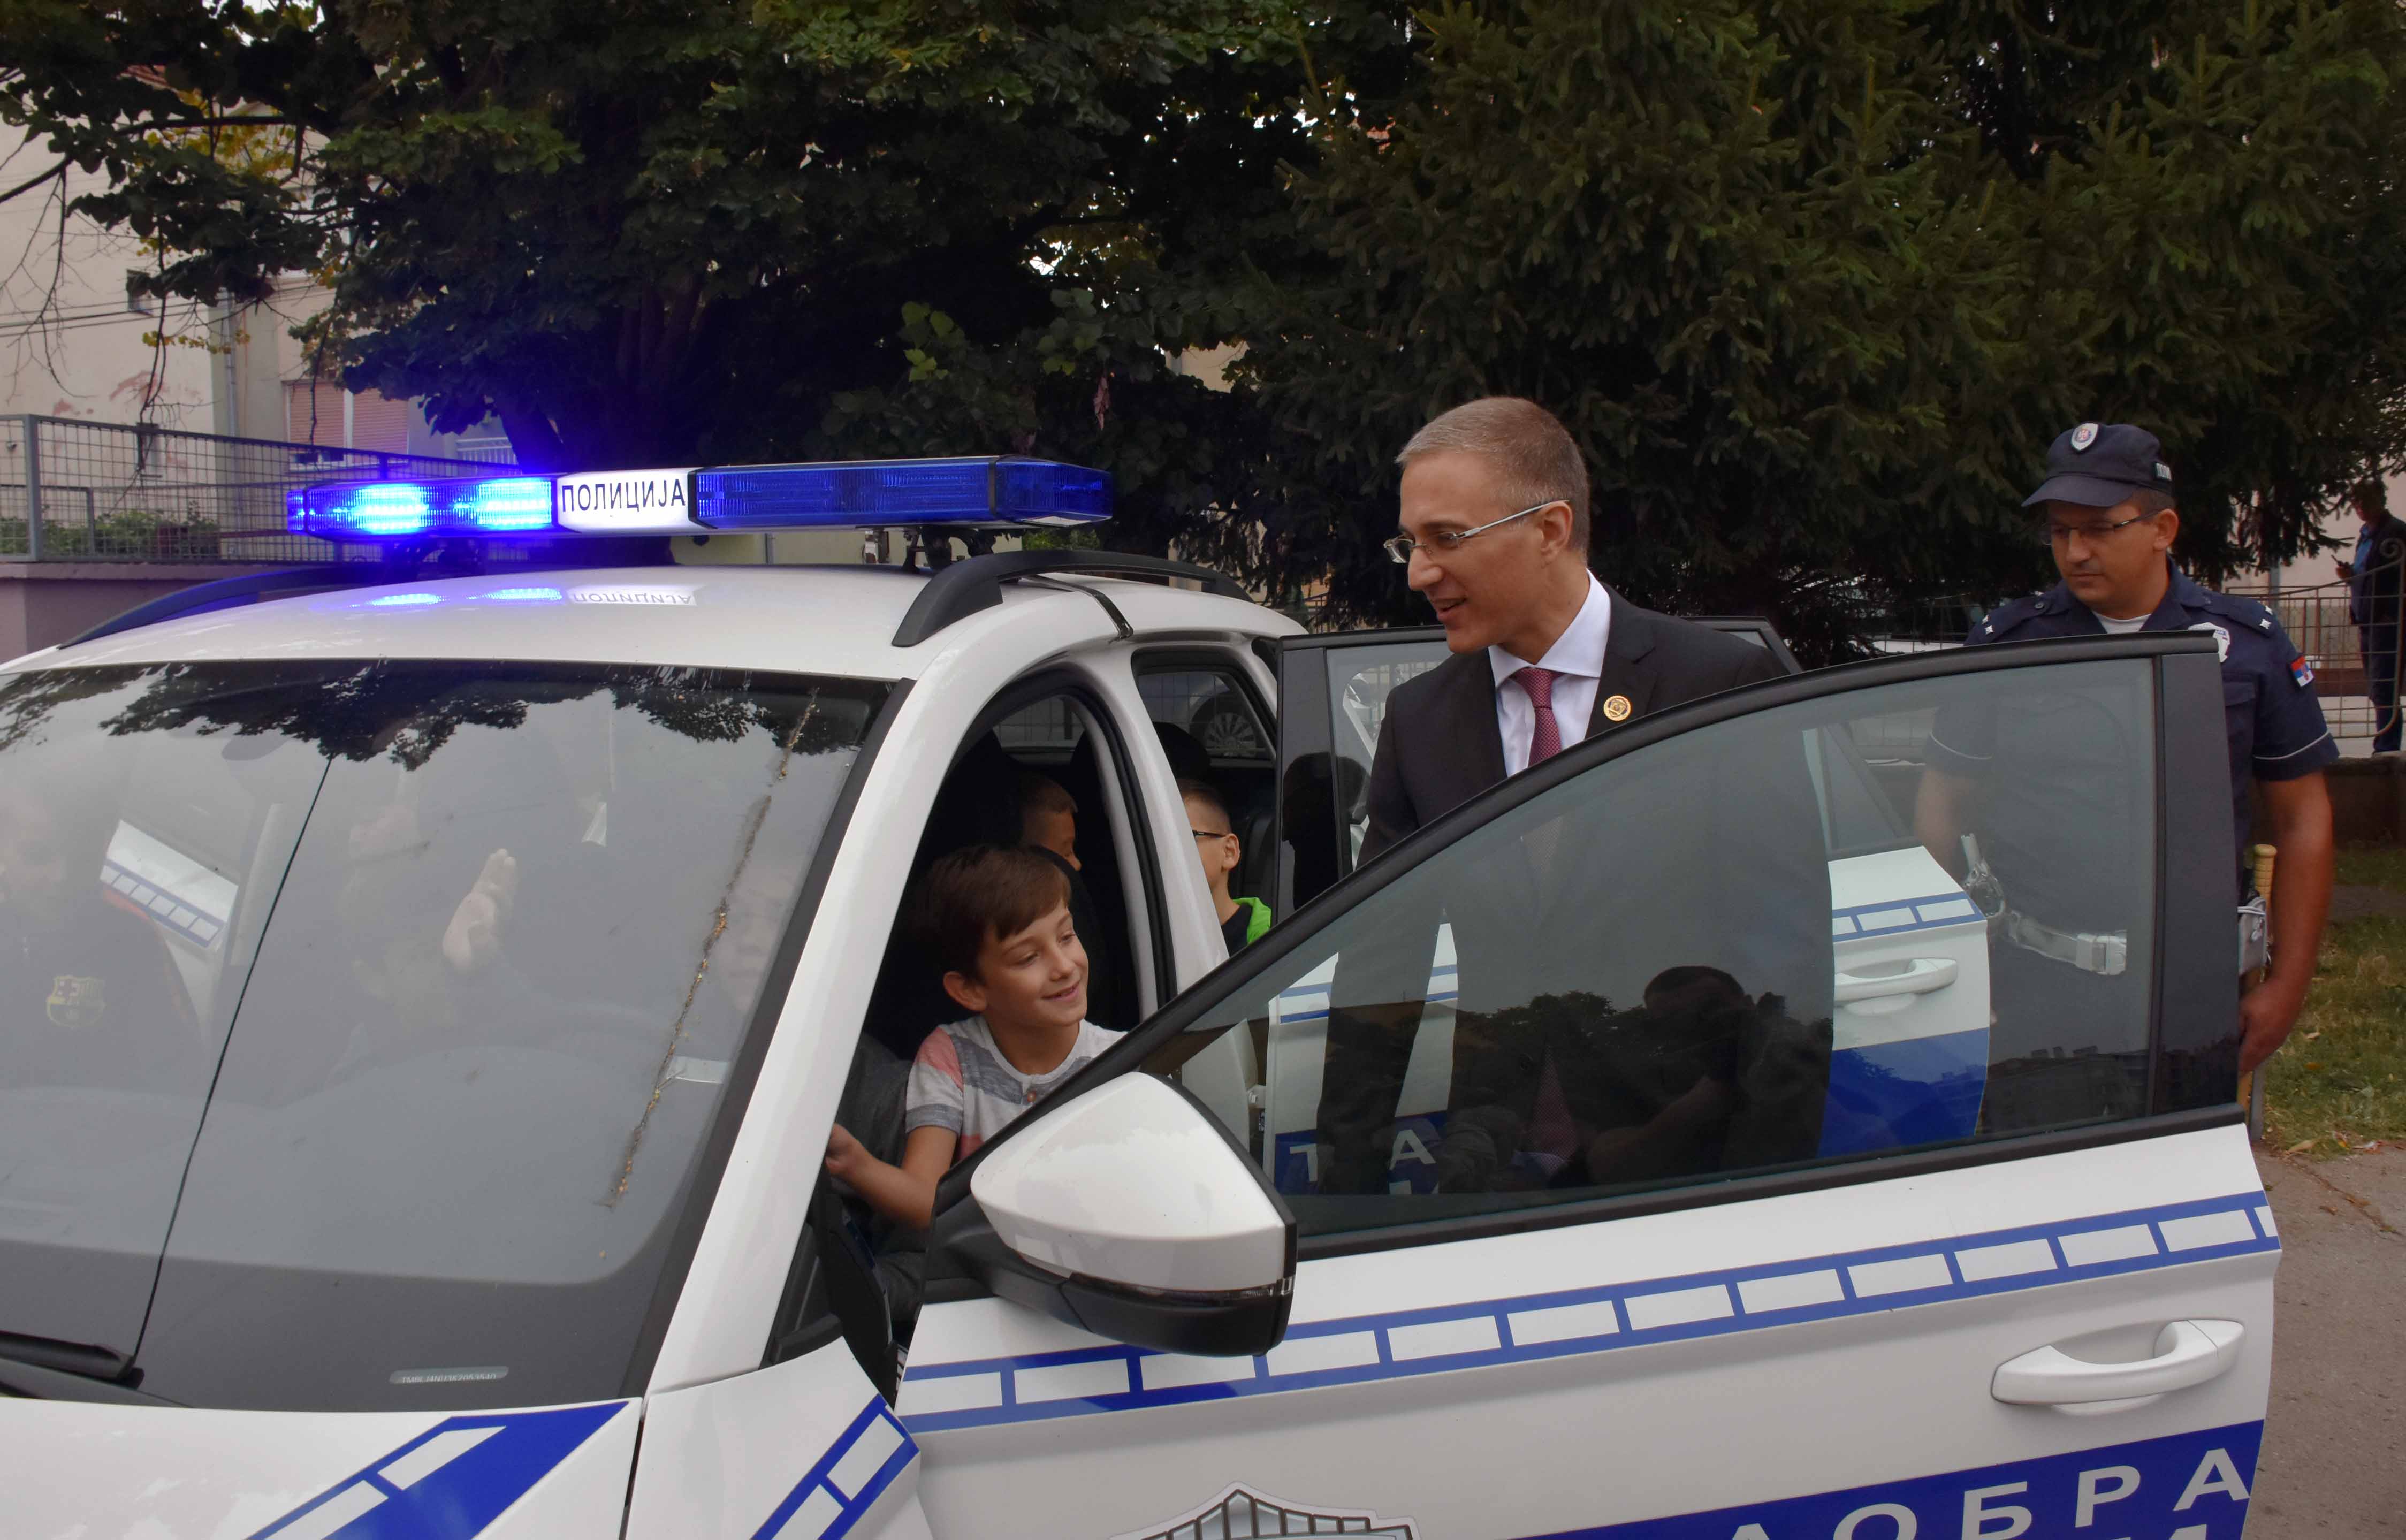 Mинистар Стефановић апеловао на возаче да и даље буду опрезни и пажљиви како би наша деца била безбедна